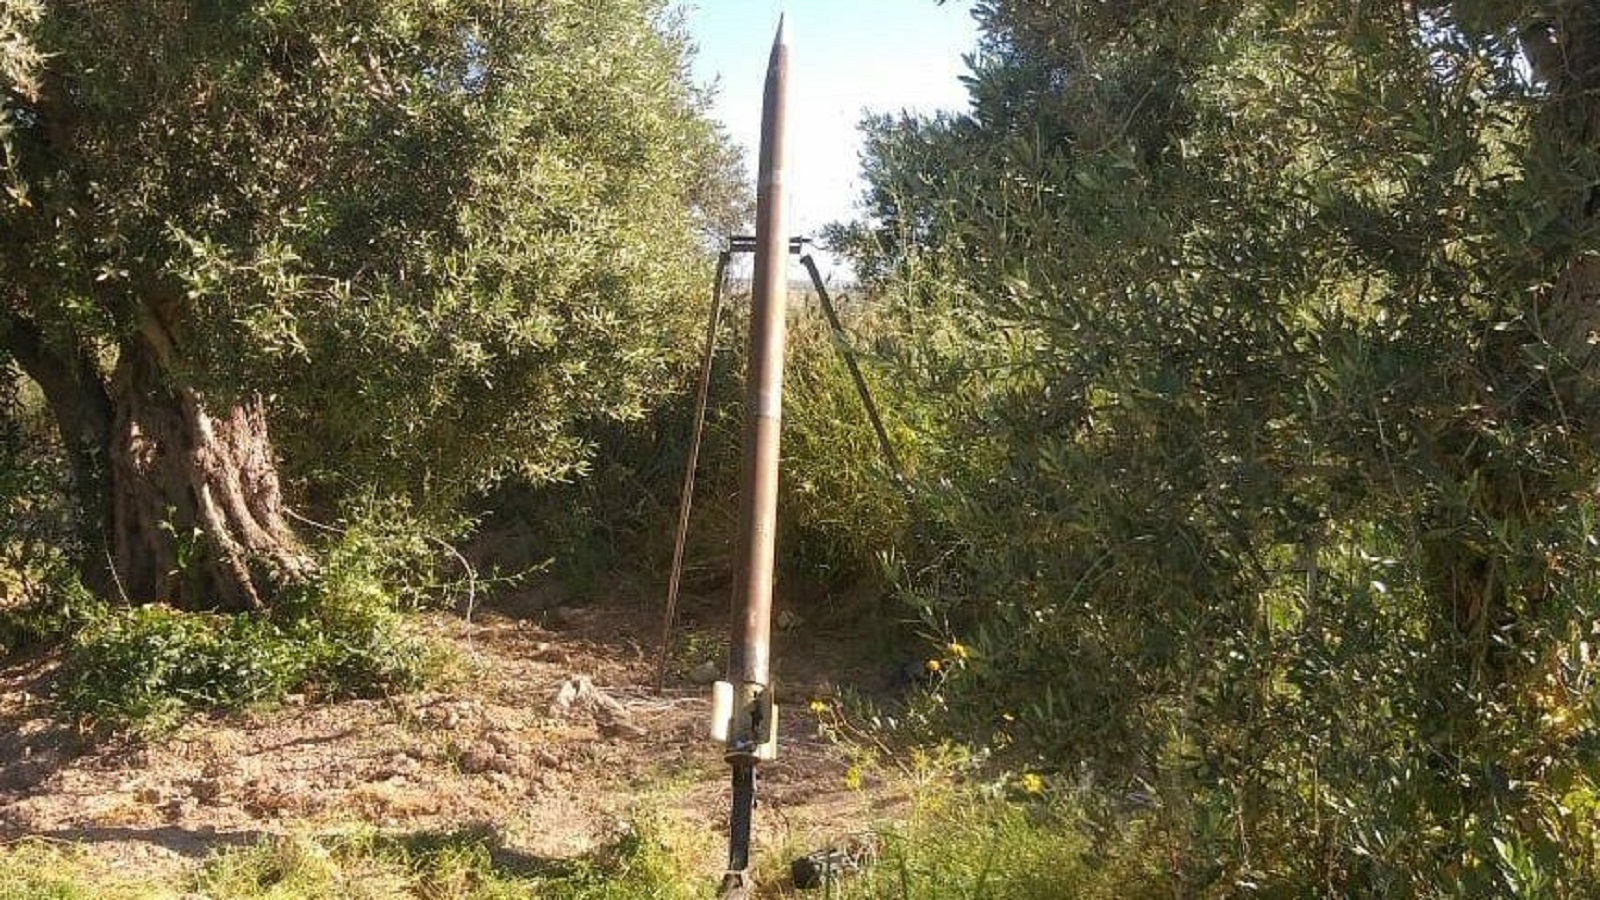 الصواريخ "اللقيطة" في قانا والعرقوب: رسائل مشفرة